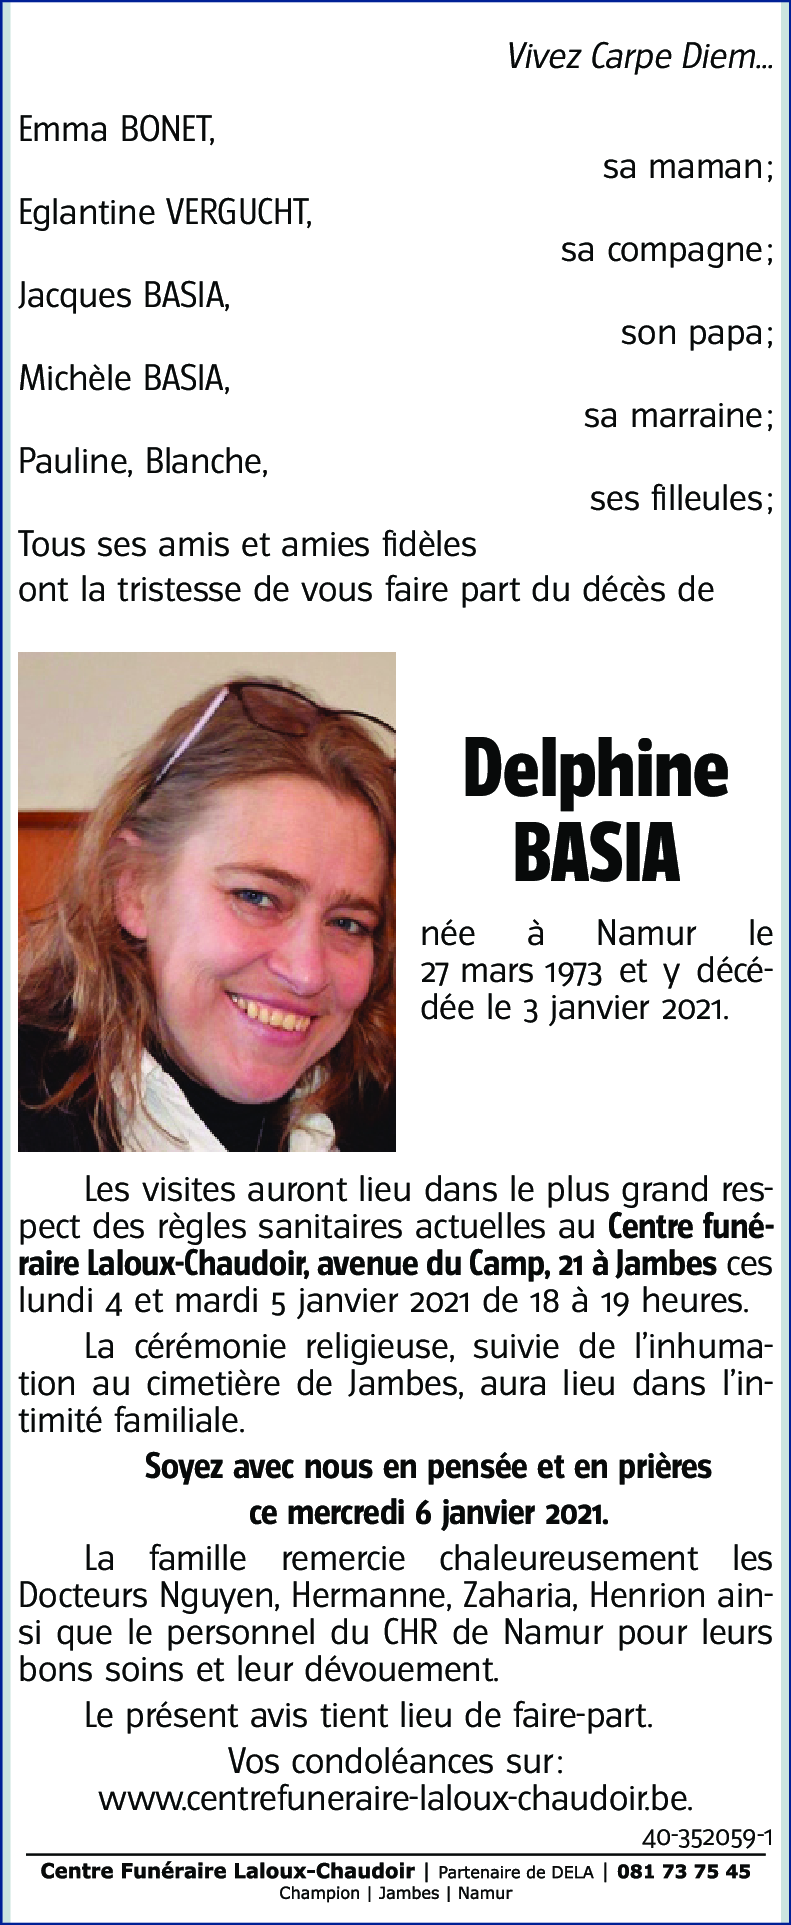 Delphine BASIA